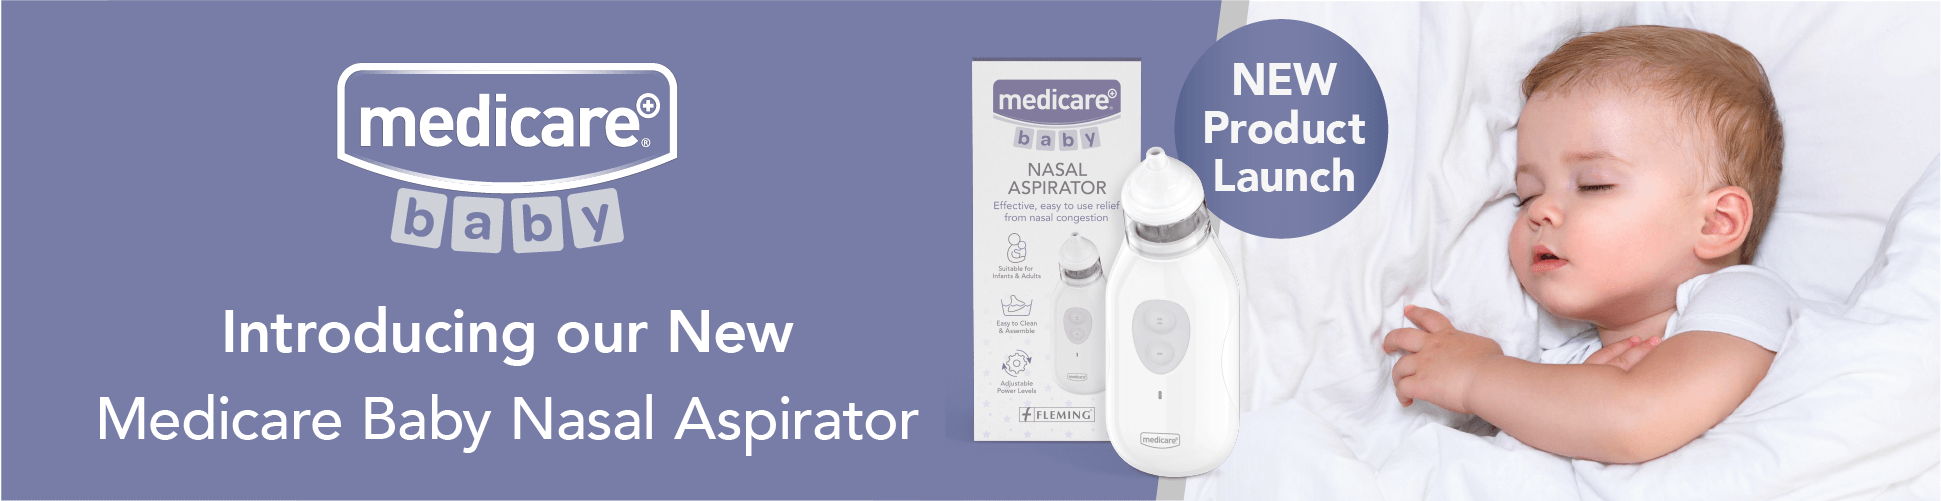 Product News | Medicare Baby Nasal Aspirator